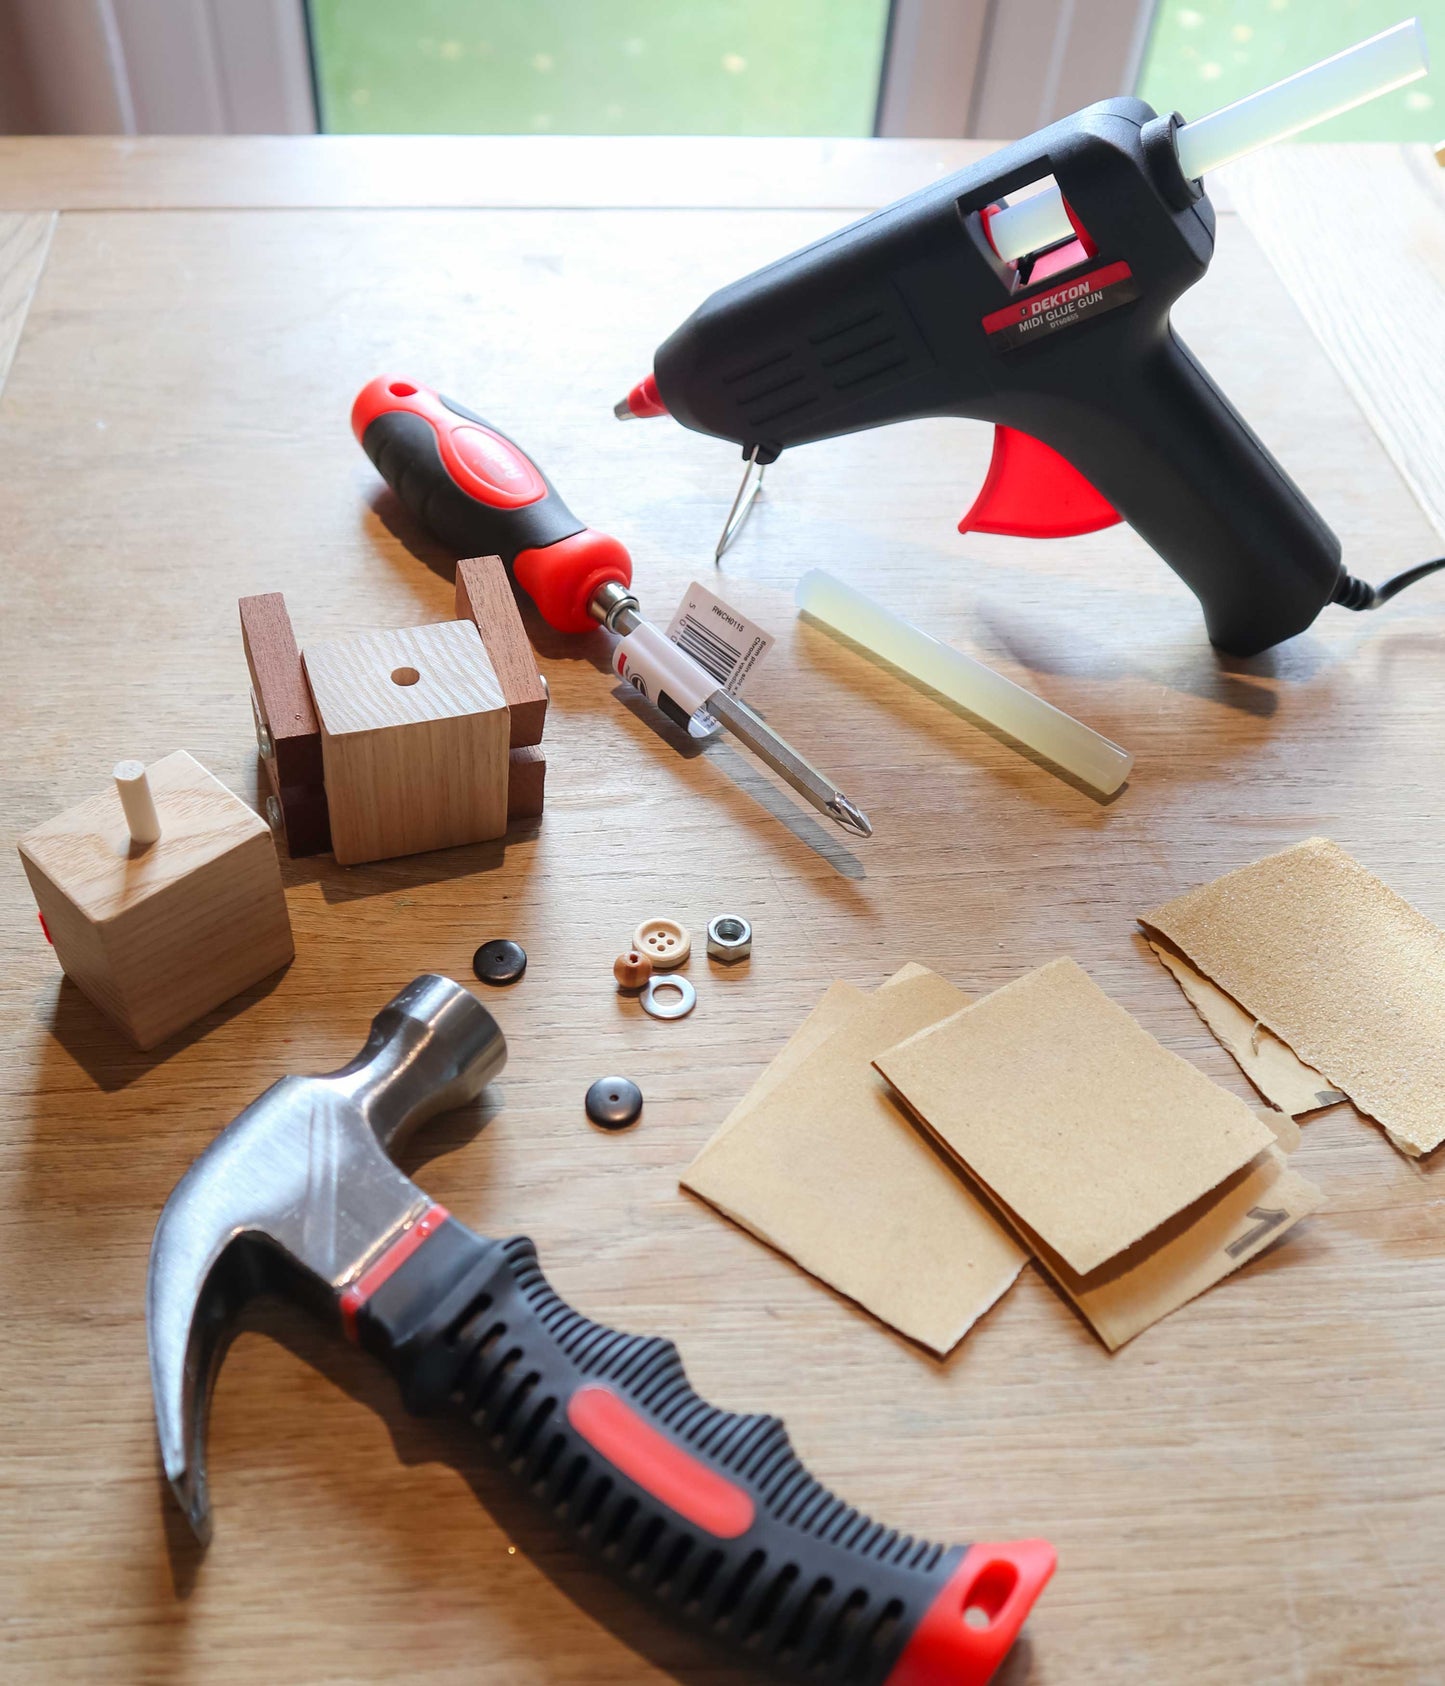 Ash & Co Mini Maker tool kit - use to build wood craft make-at-home kits at home